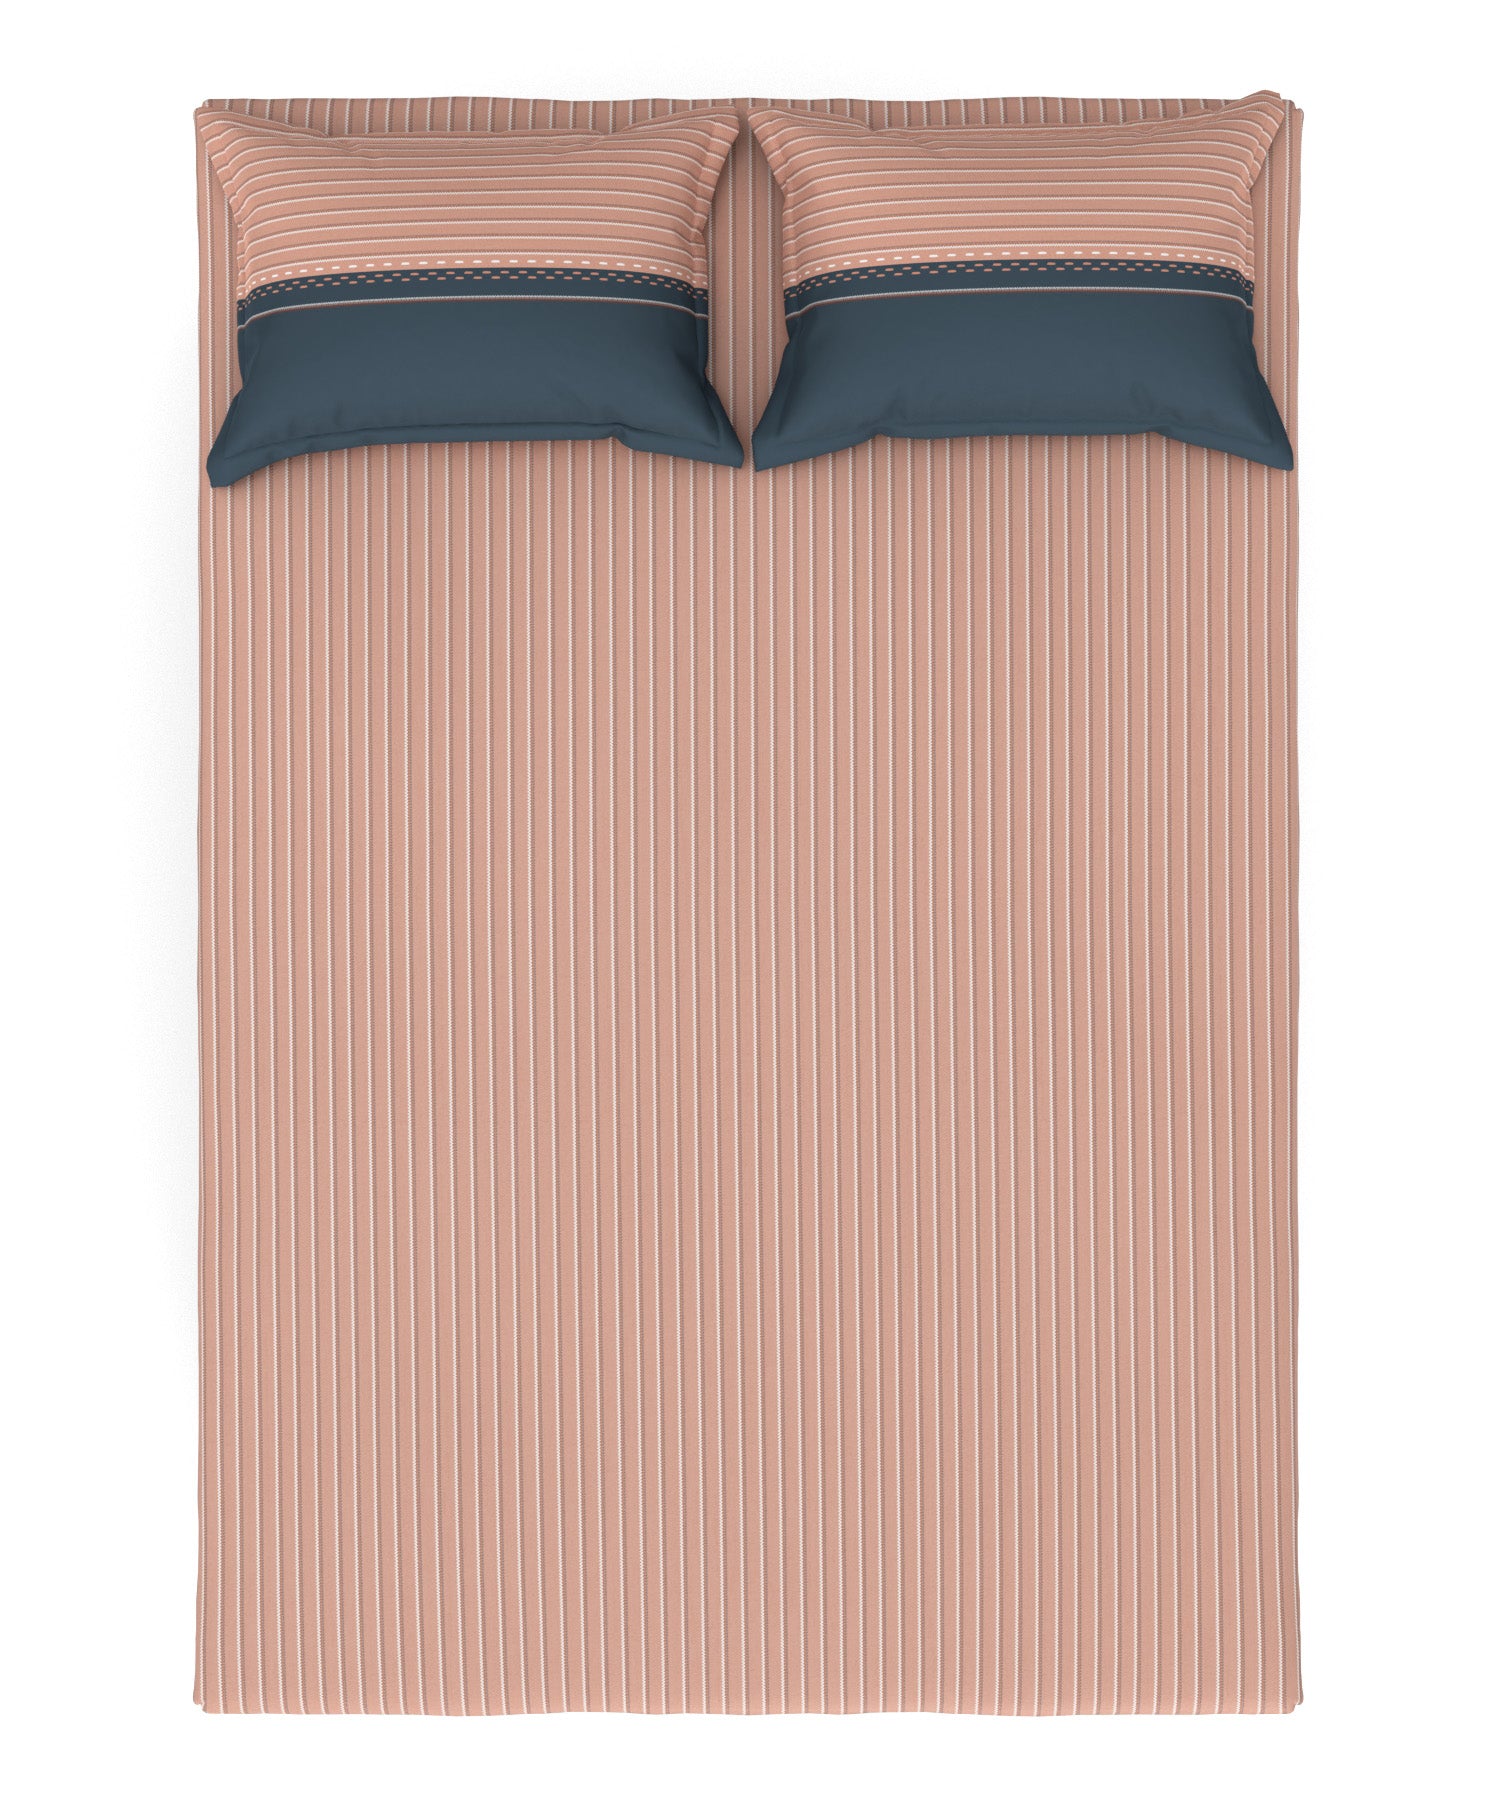 Queen Size Bedsheet ₹1279/-